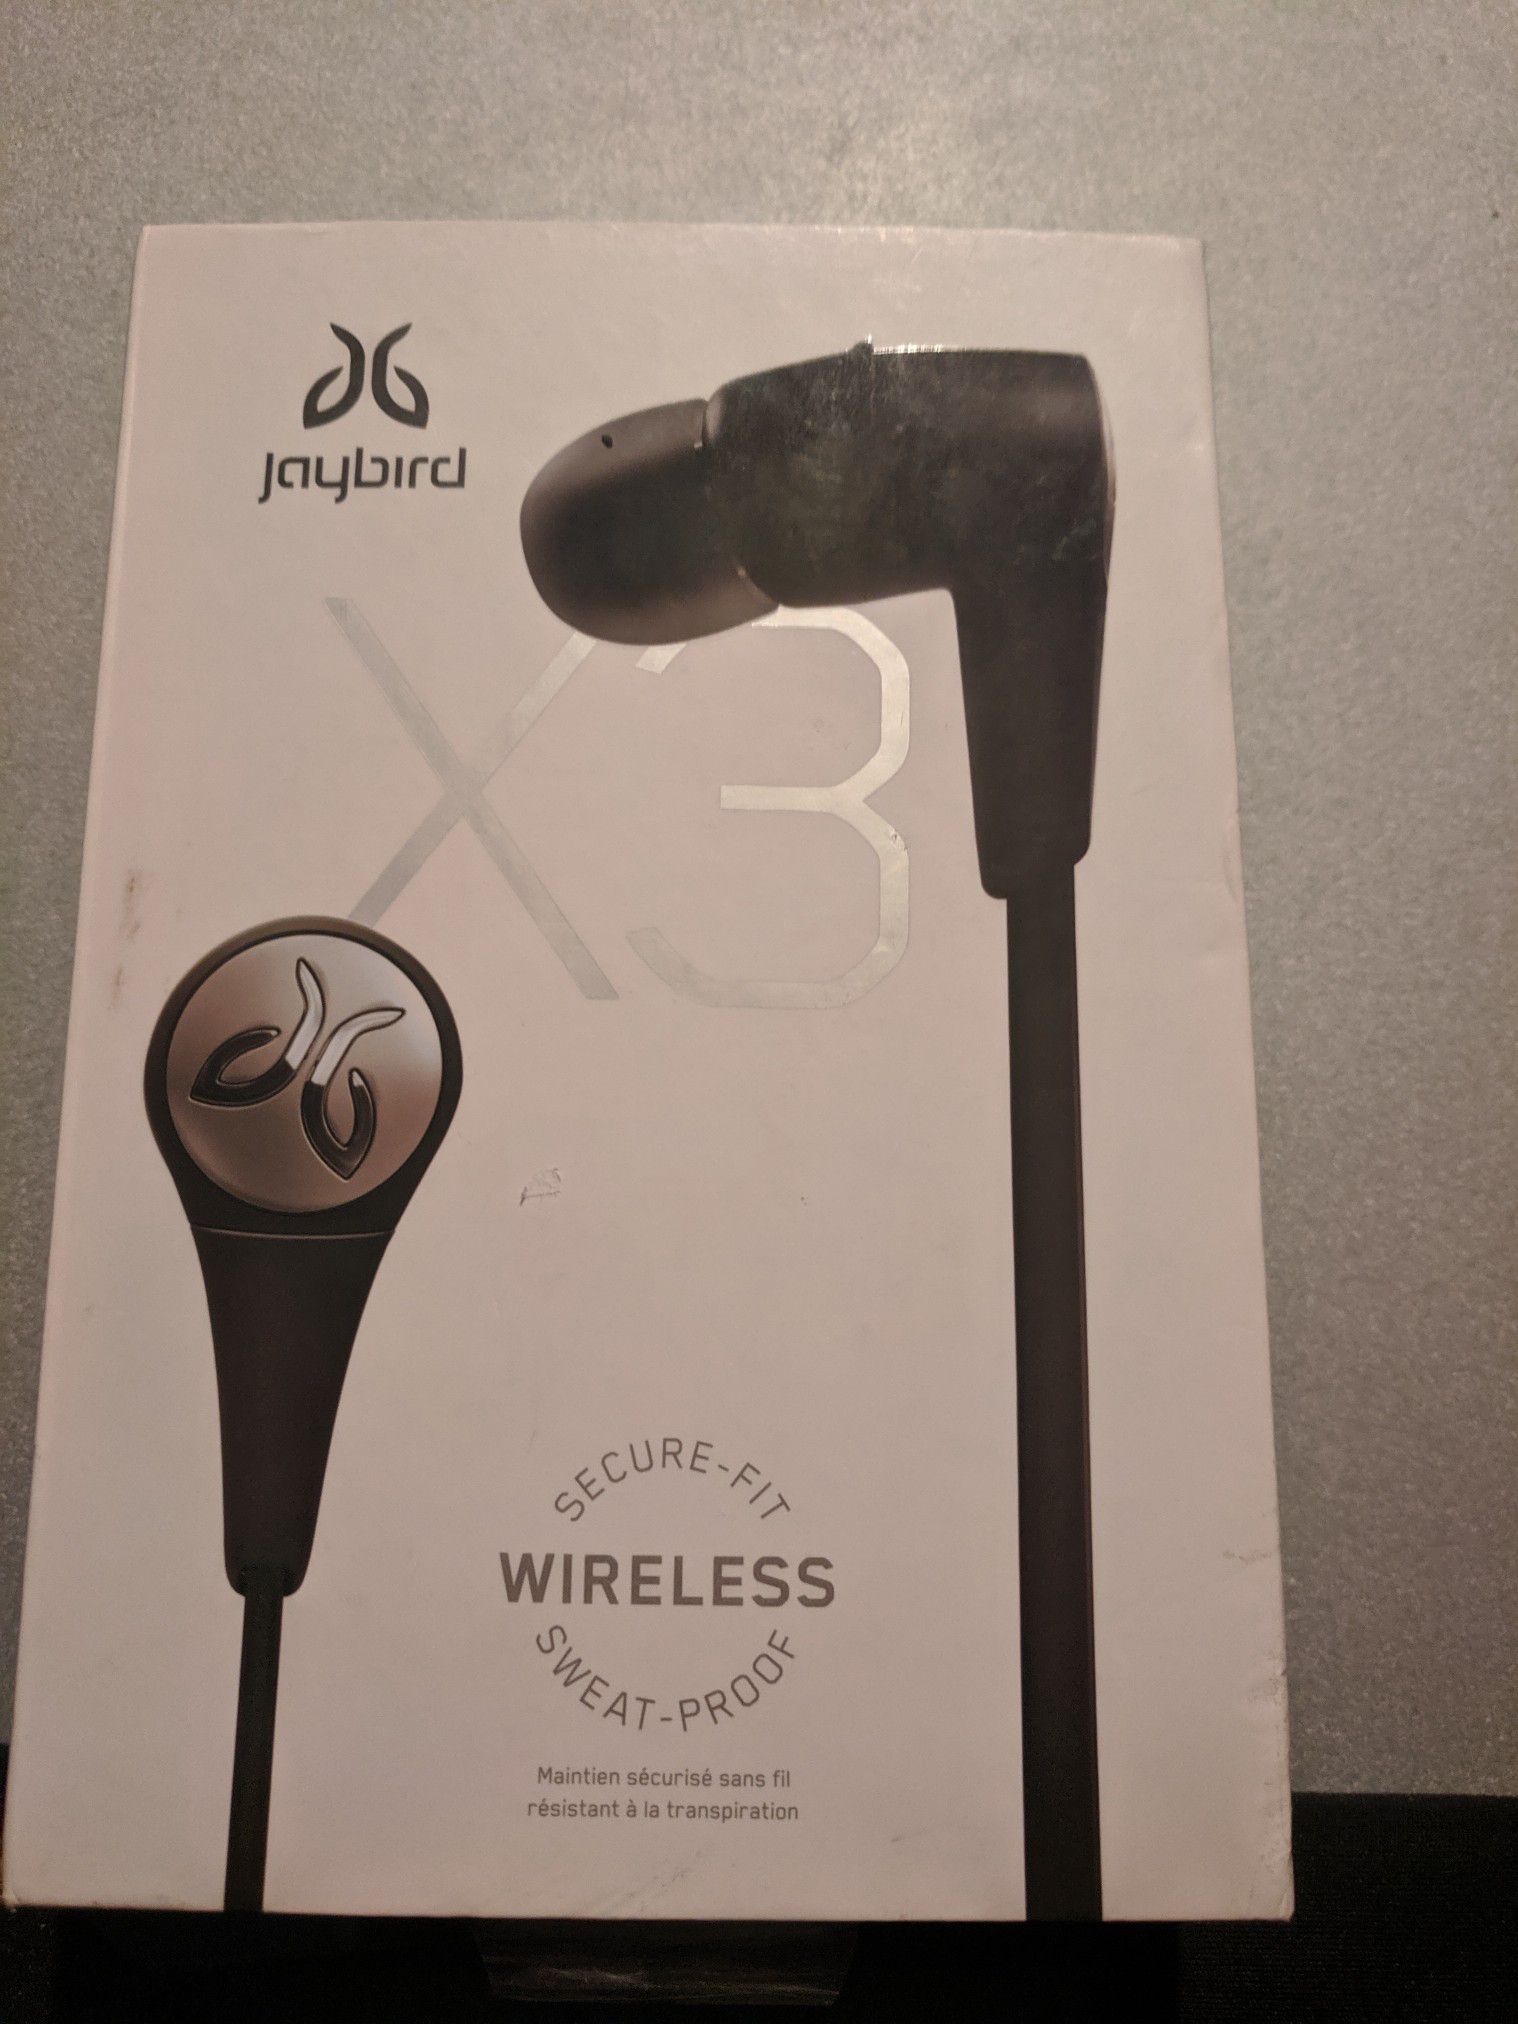 Jaybird x3 Wireless Headphones Active Sport Earbuds by Bluetooth